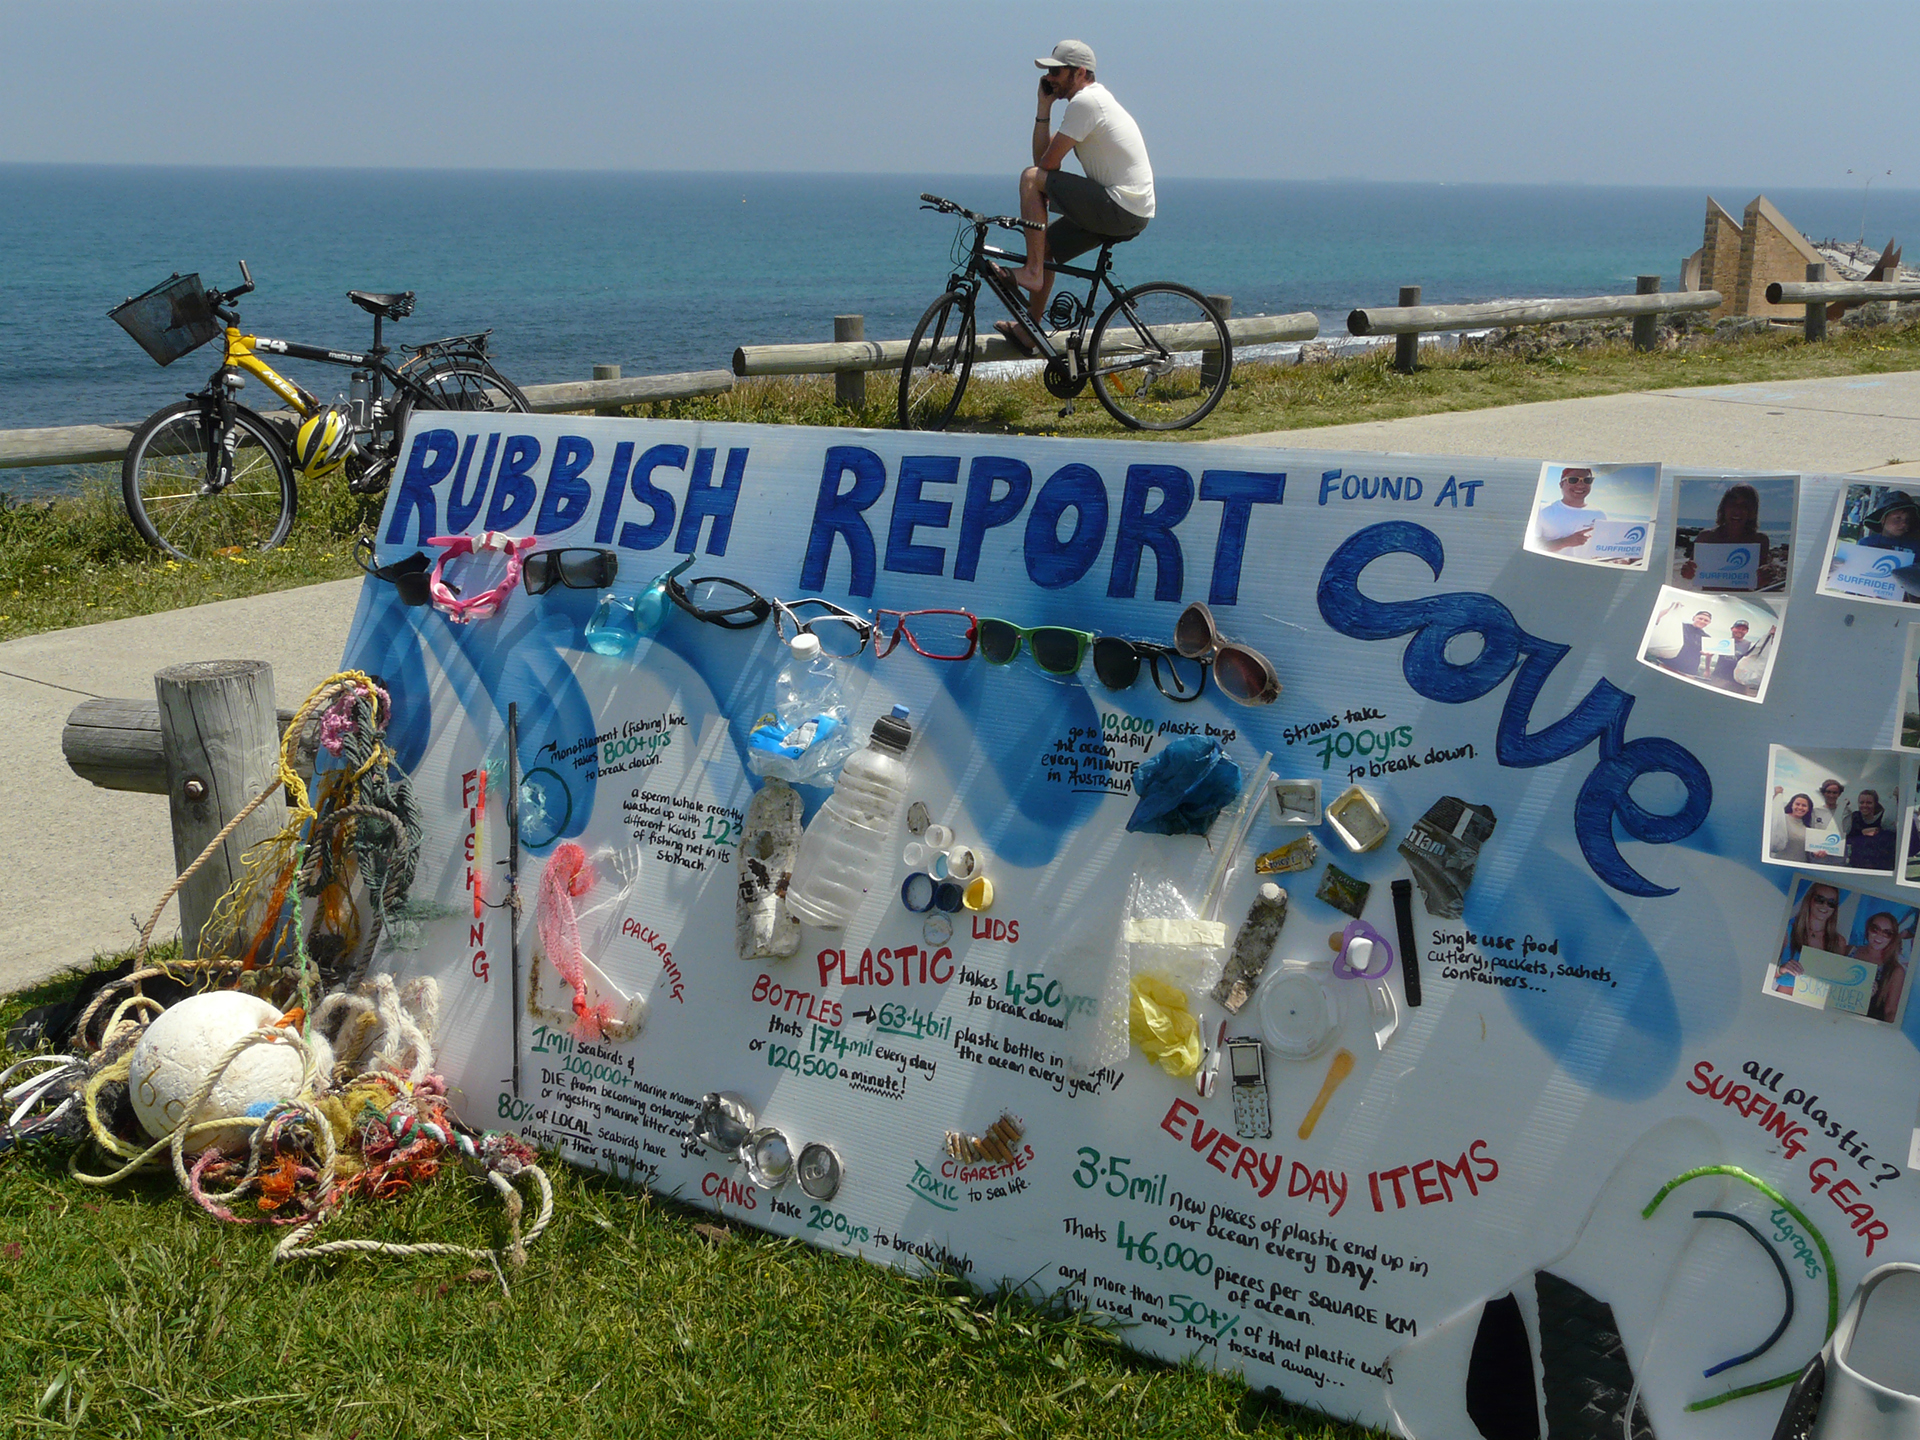 Cove rubbish report